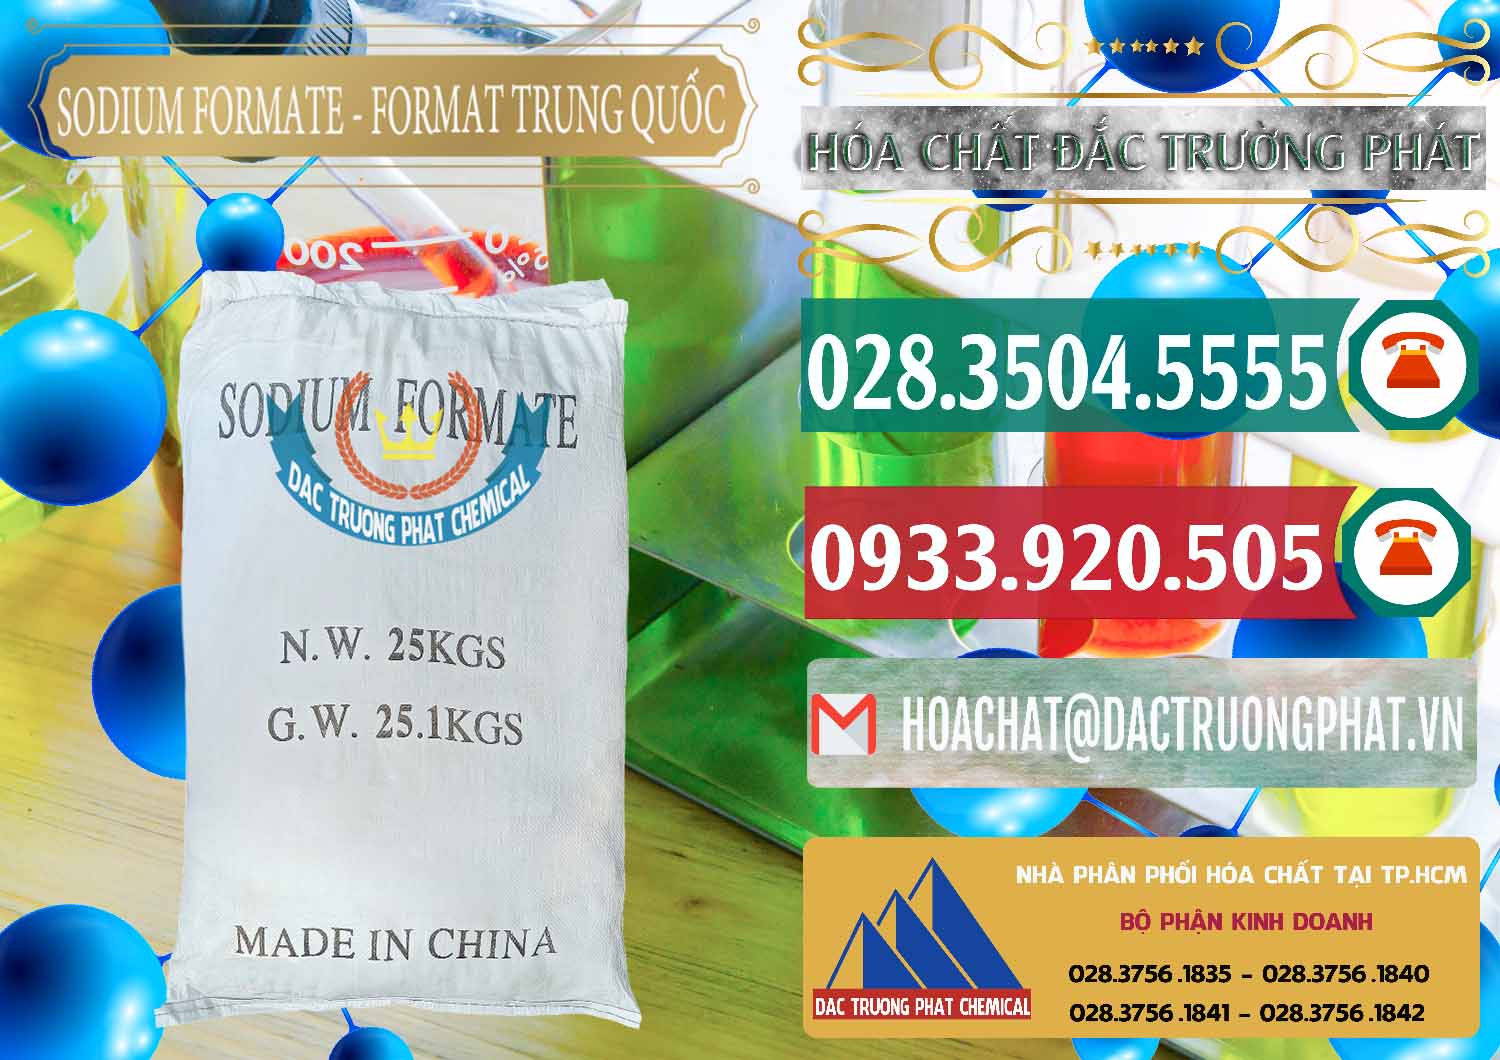 Cty chuyên phân phối và bán Sodium Formate - Natri Format Trung Quốc China - 0142 - Đơn vị chuyên phân phối ( nhập khẩu ) hóa chất tại TP.HCM - muabanhoachat.vn